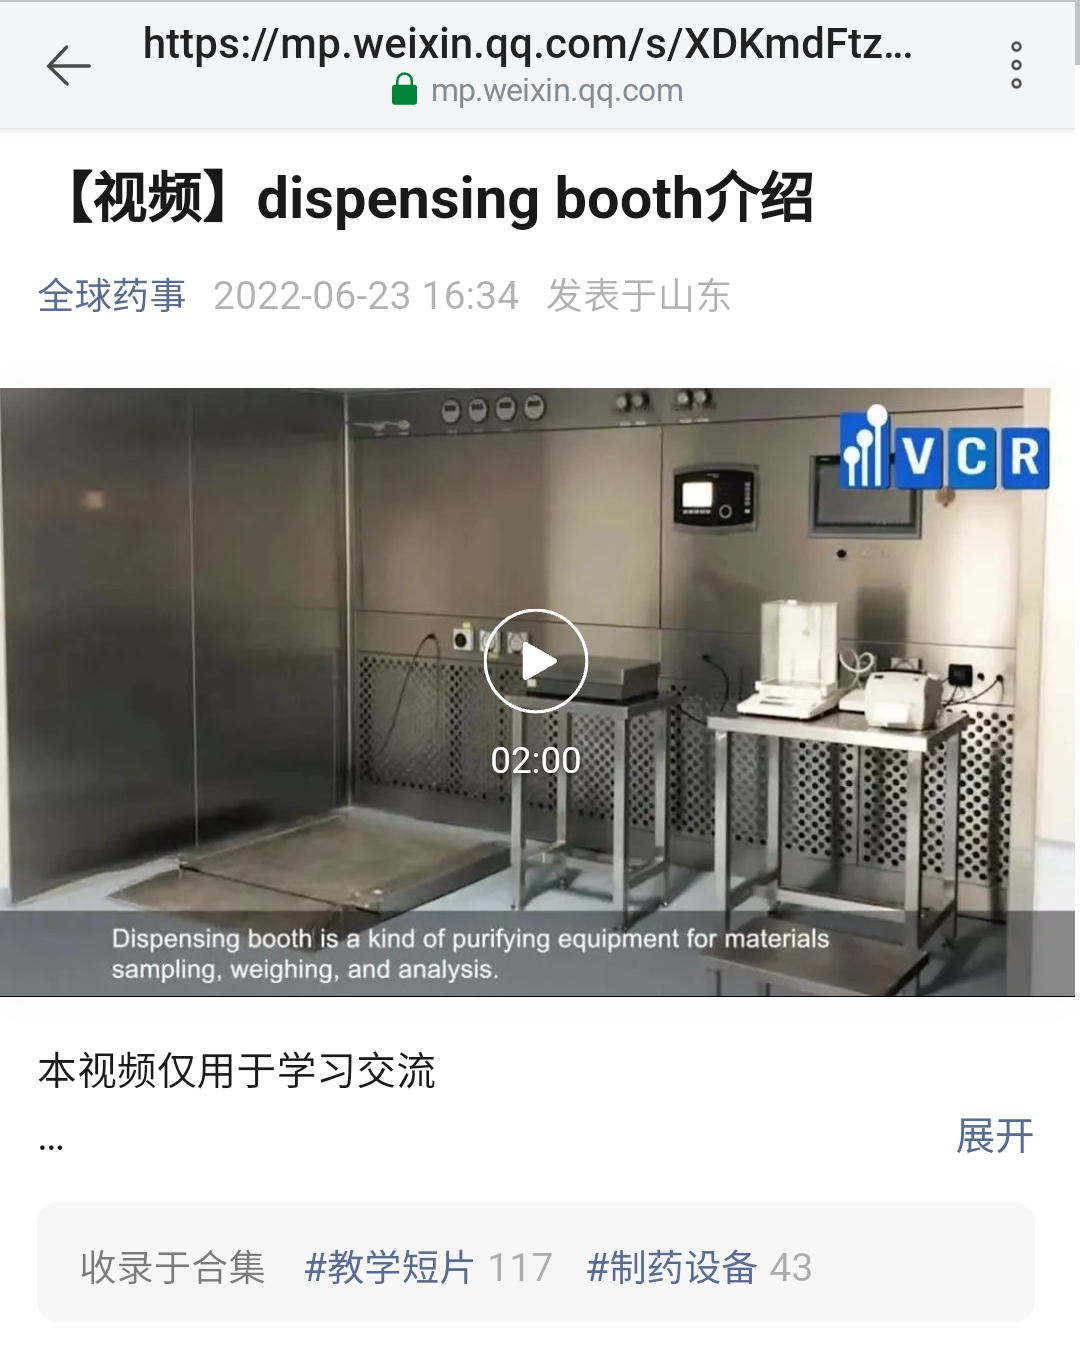 Video giới thiệu Dissspensing booth - thiết bị phòng sạch VCR